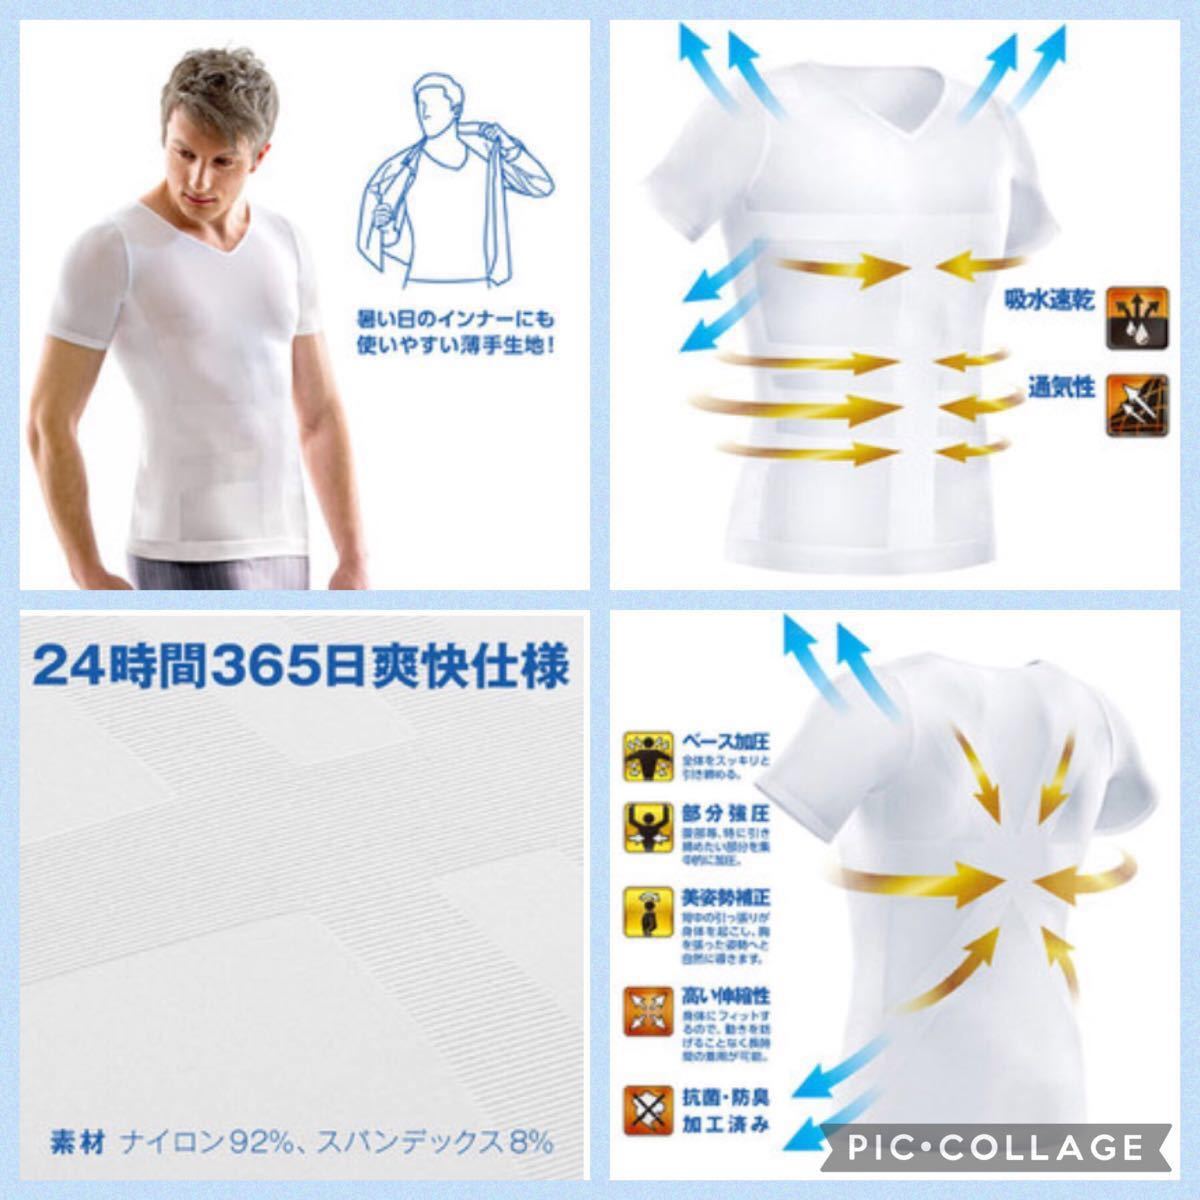 クールドライ加圧シャツ インナーシャツ パワーウェア 体幹 ジム 加圧シャツ コンプレッションウェア 加圧インナー 姿勢矯正 半袖